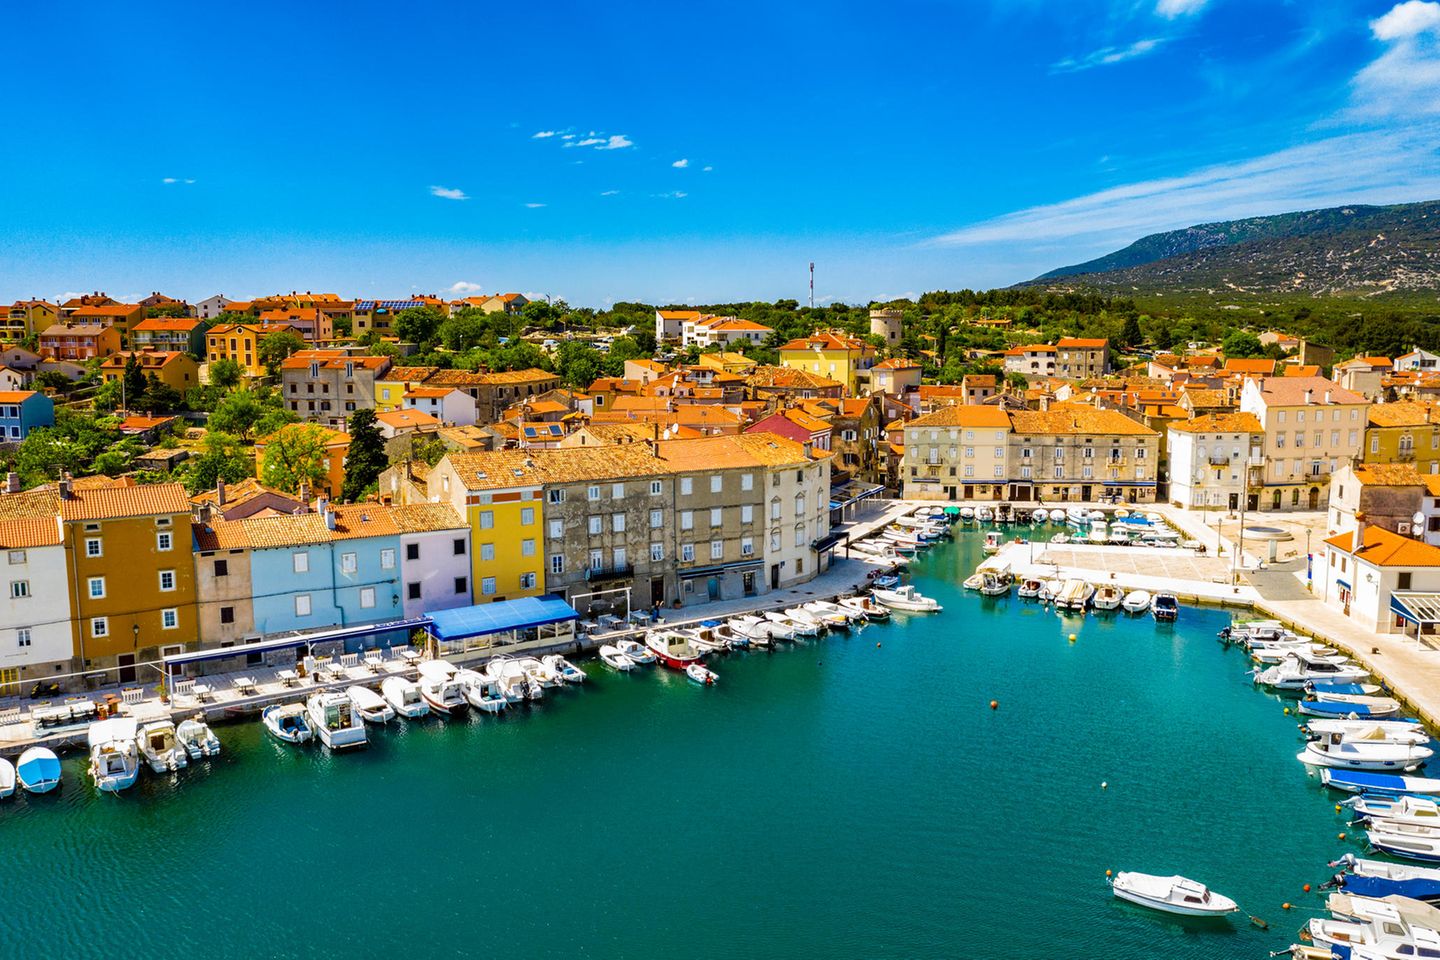 Hafen der Stadt Cres auf der Insel Cres, Kroatien